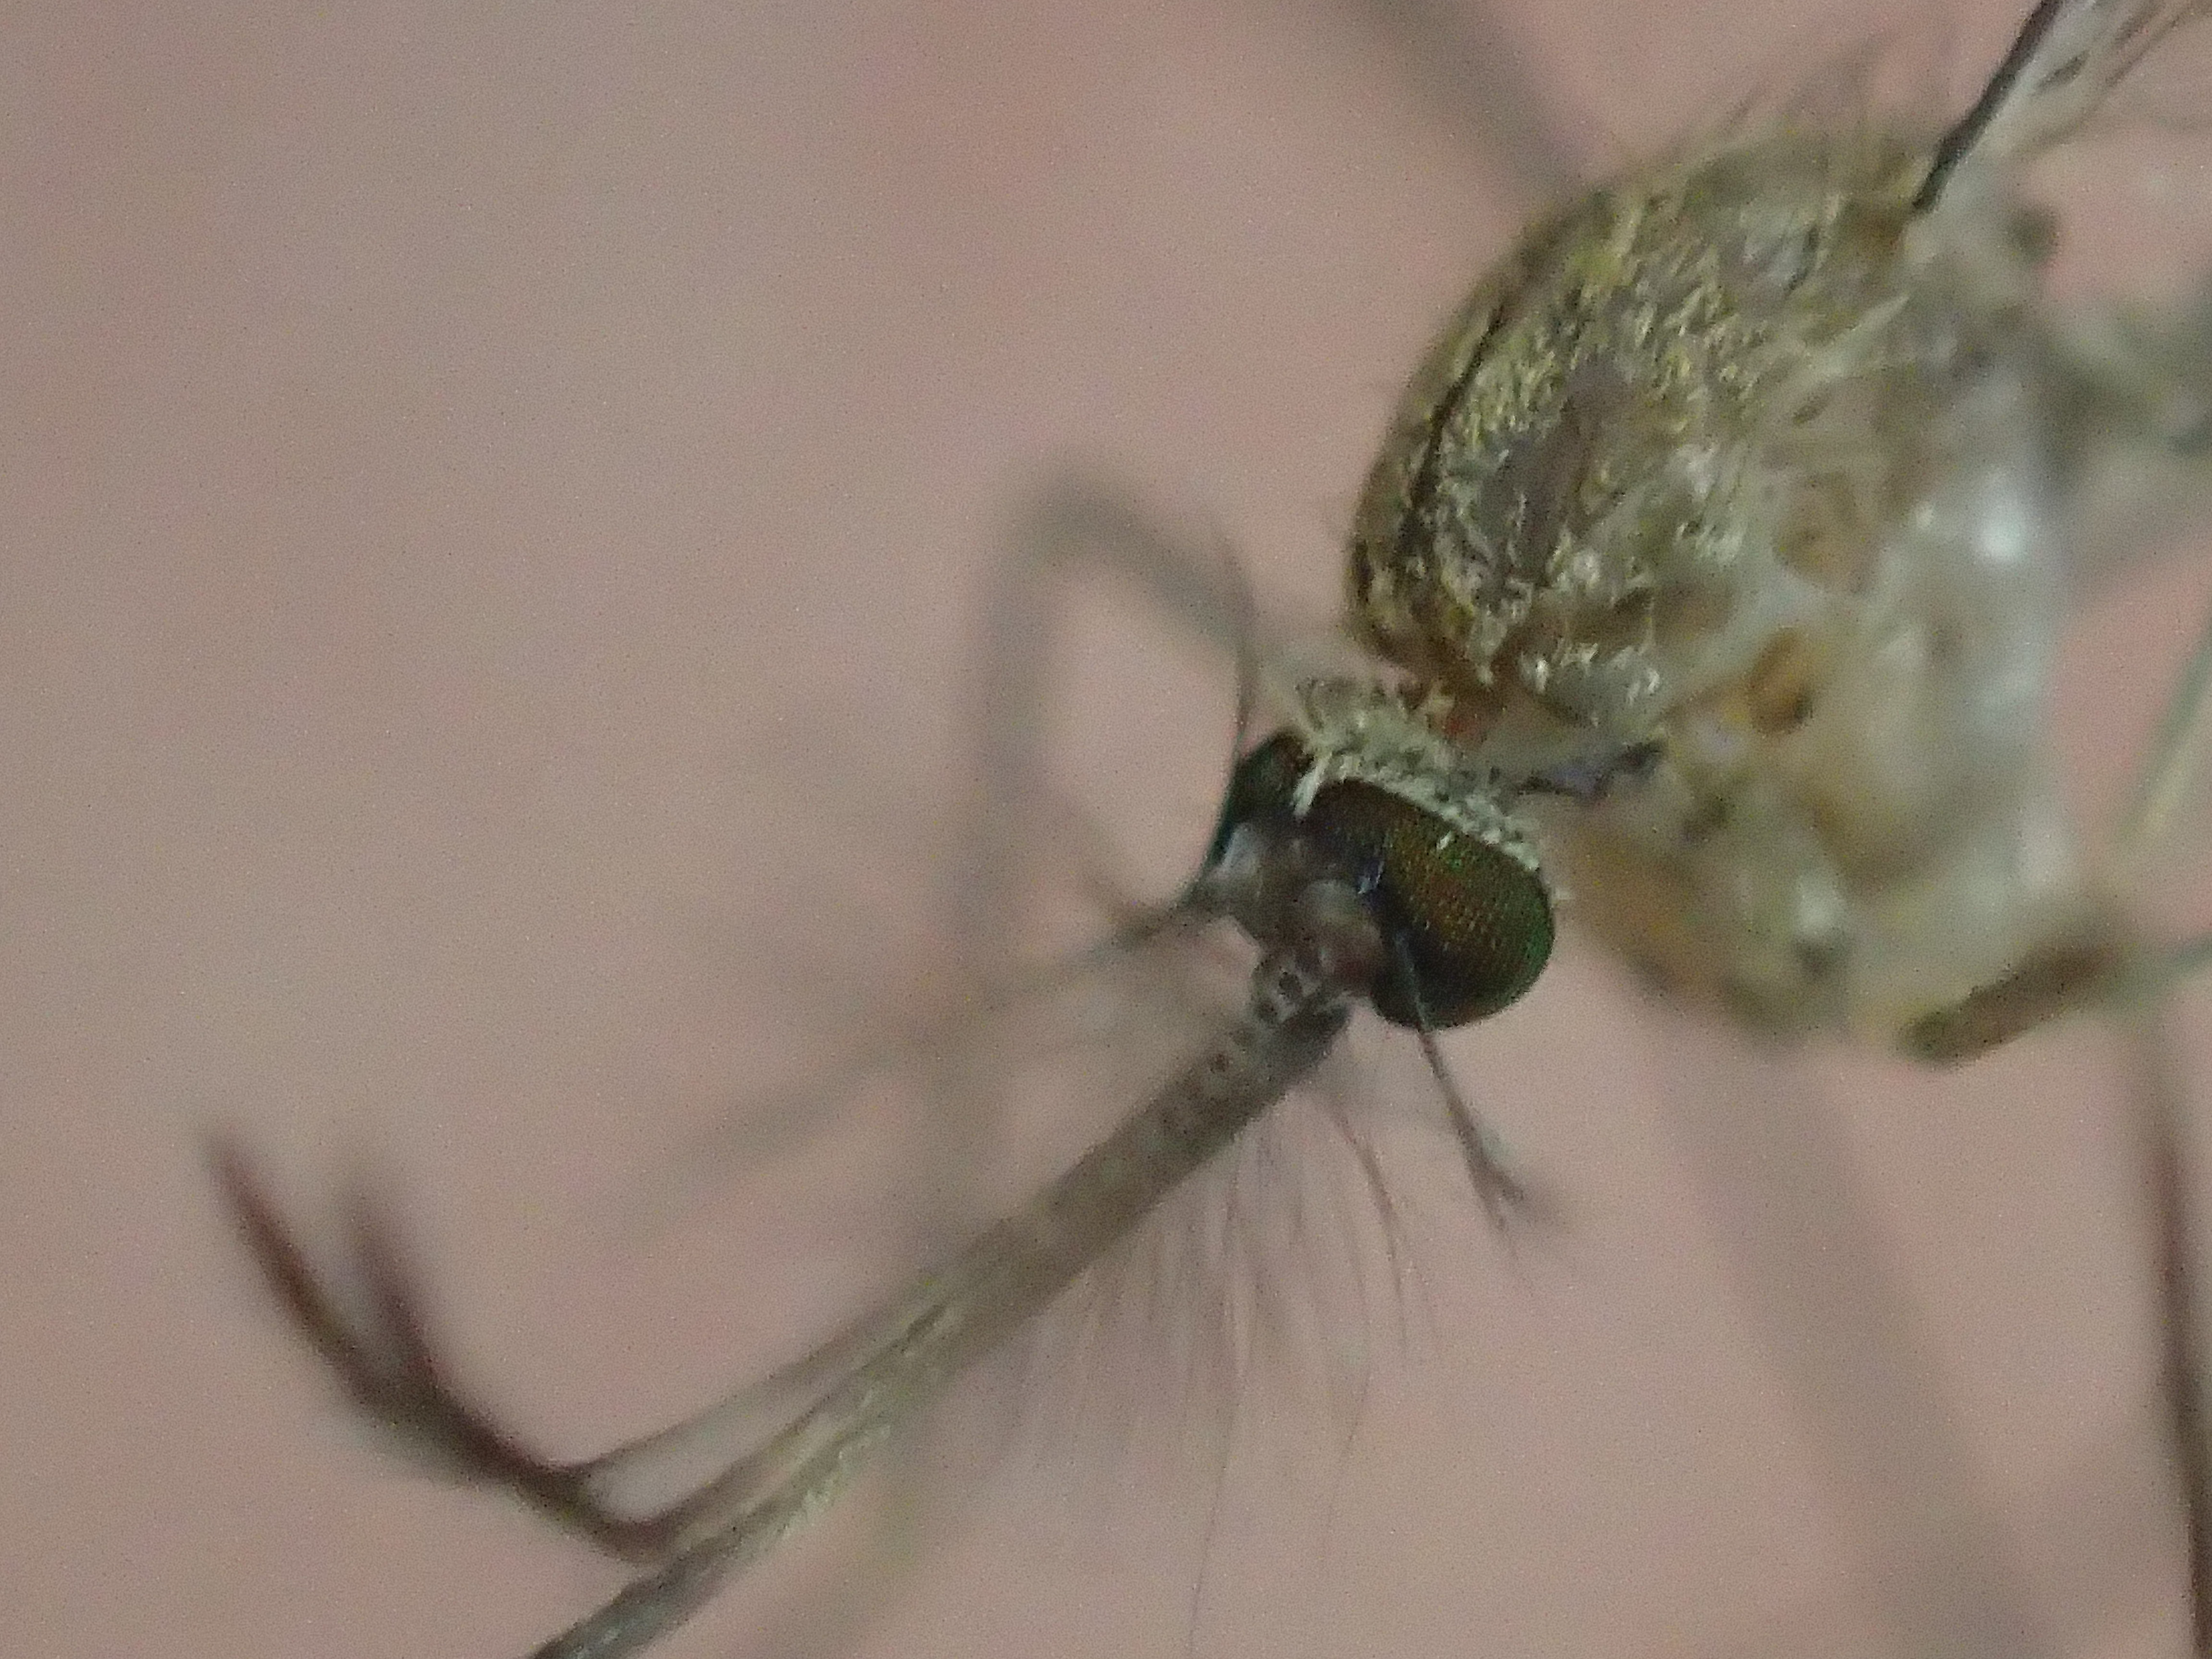 蚊の顔の表情を撮影したミクロな世界